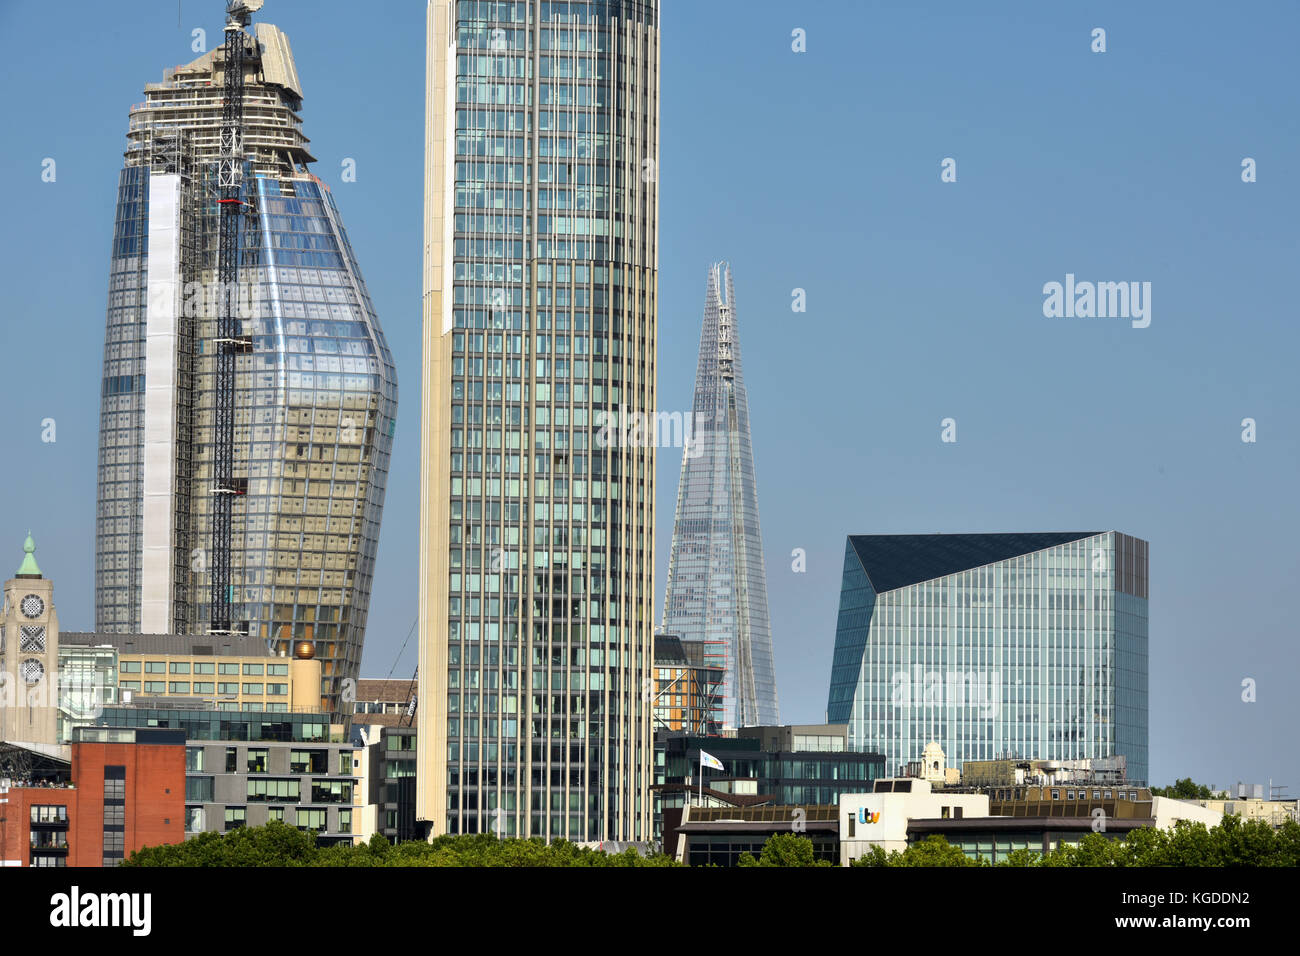 Los nuevos desarrollos a lo largo de la orilla sur del río Támesis en Londres están creando una alternativa skyline londinense. De izquierda a derecha, el diminutivo OXO Towe Foto de stock